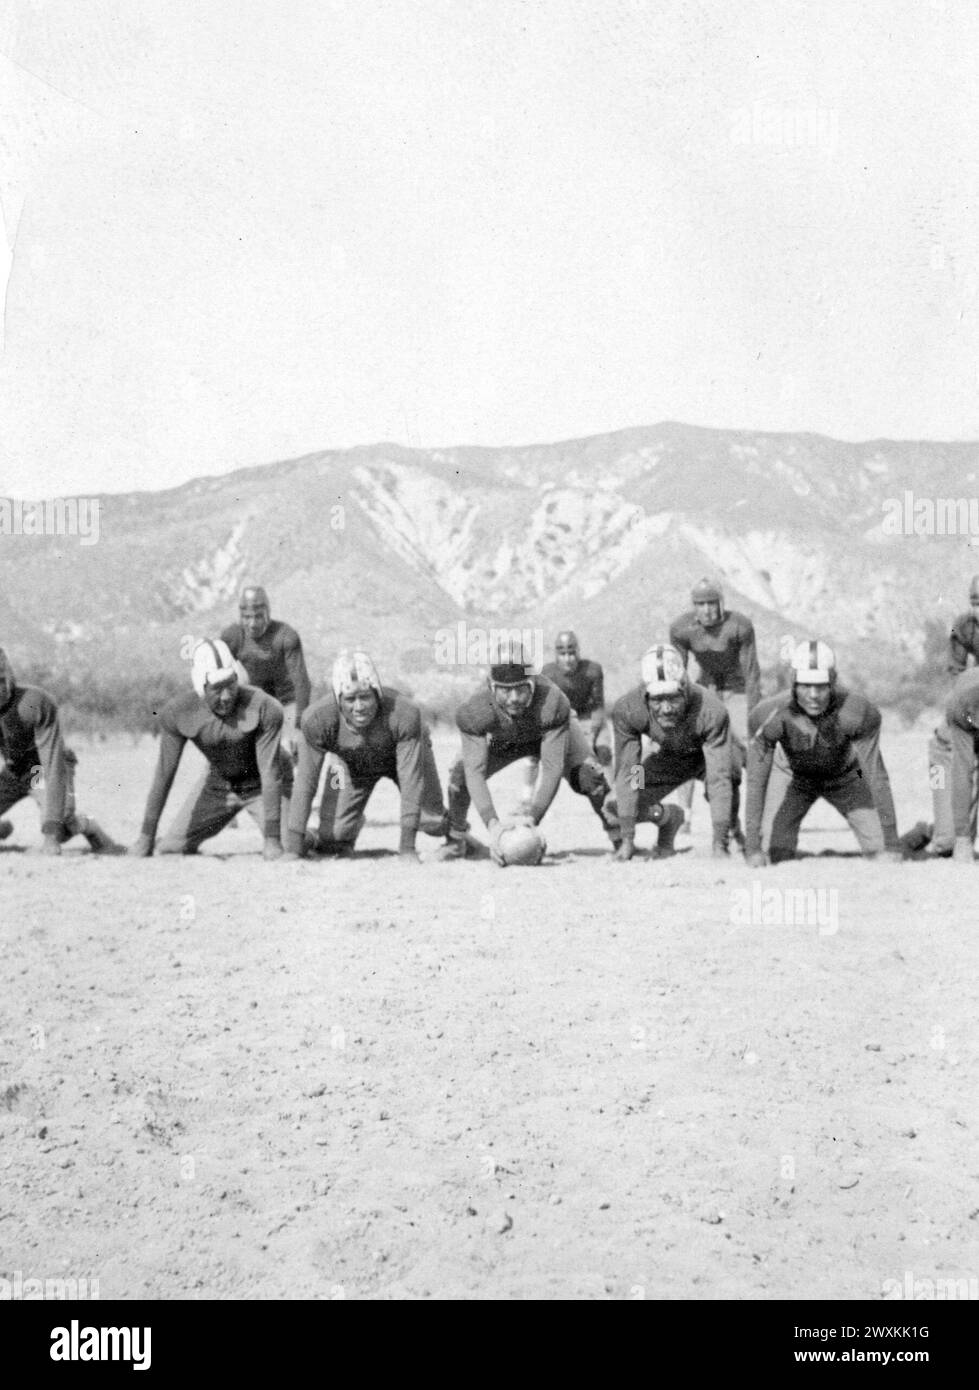 Photographie de l'une des équipes de football organisées à Morongo Indian Reservation, Californie CA. 1936-1942 Banque D'Images